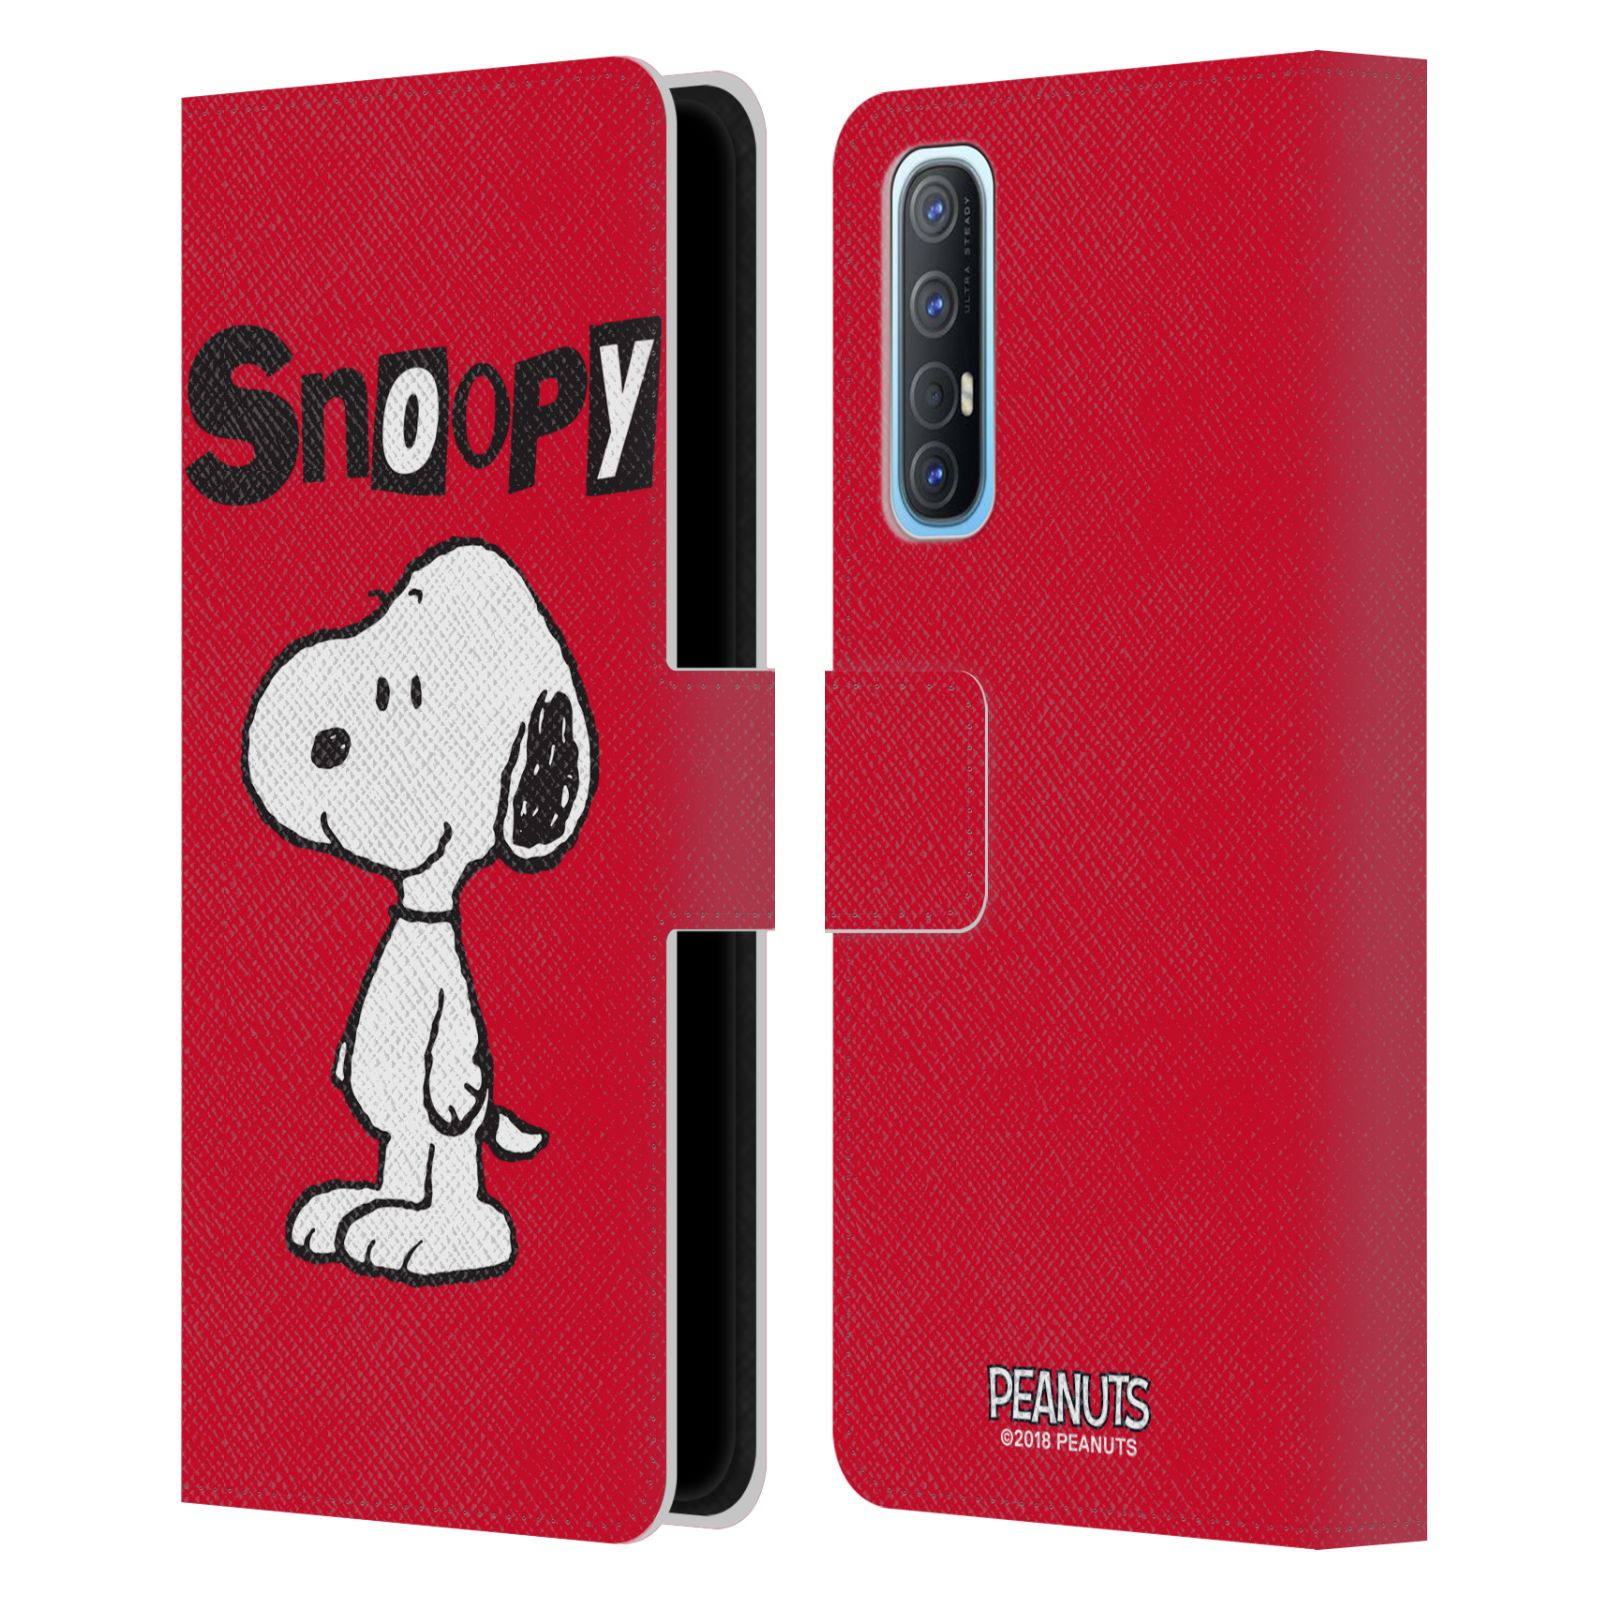 Pouzdro na mobil Oppo Find X2 NEO - HEAD CASE - Peanuts - Snoopy červená